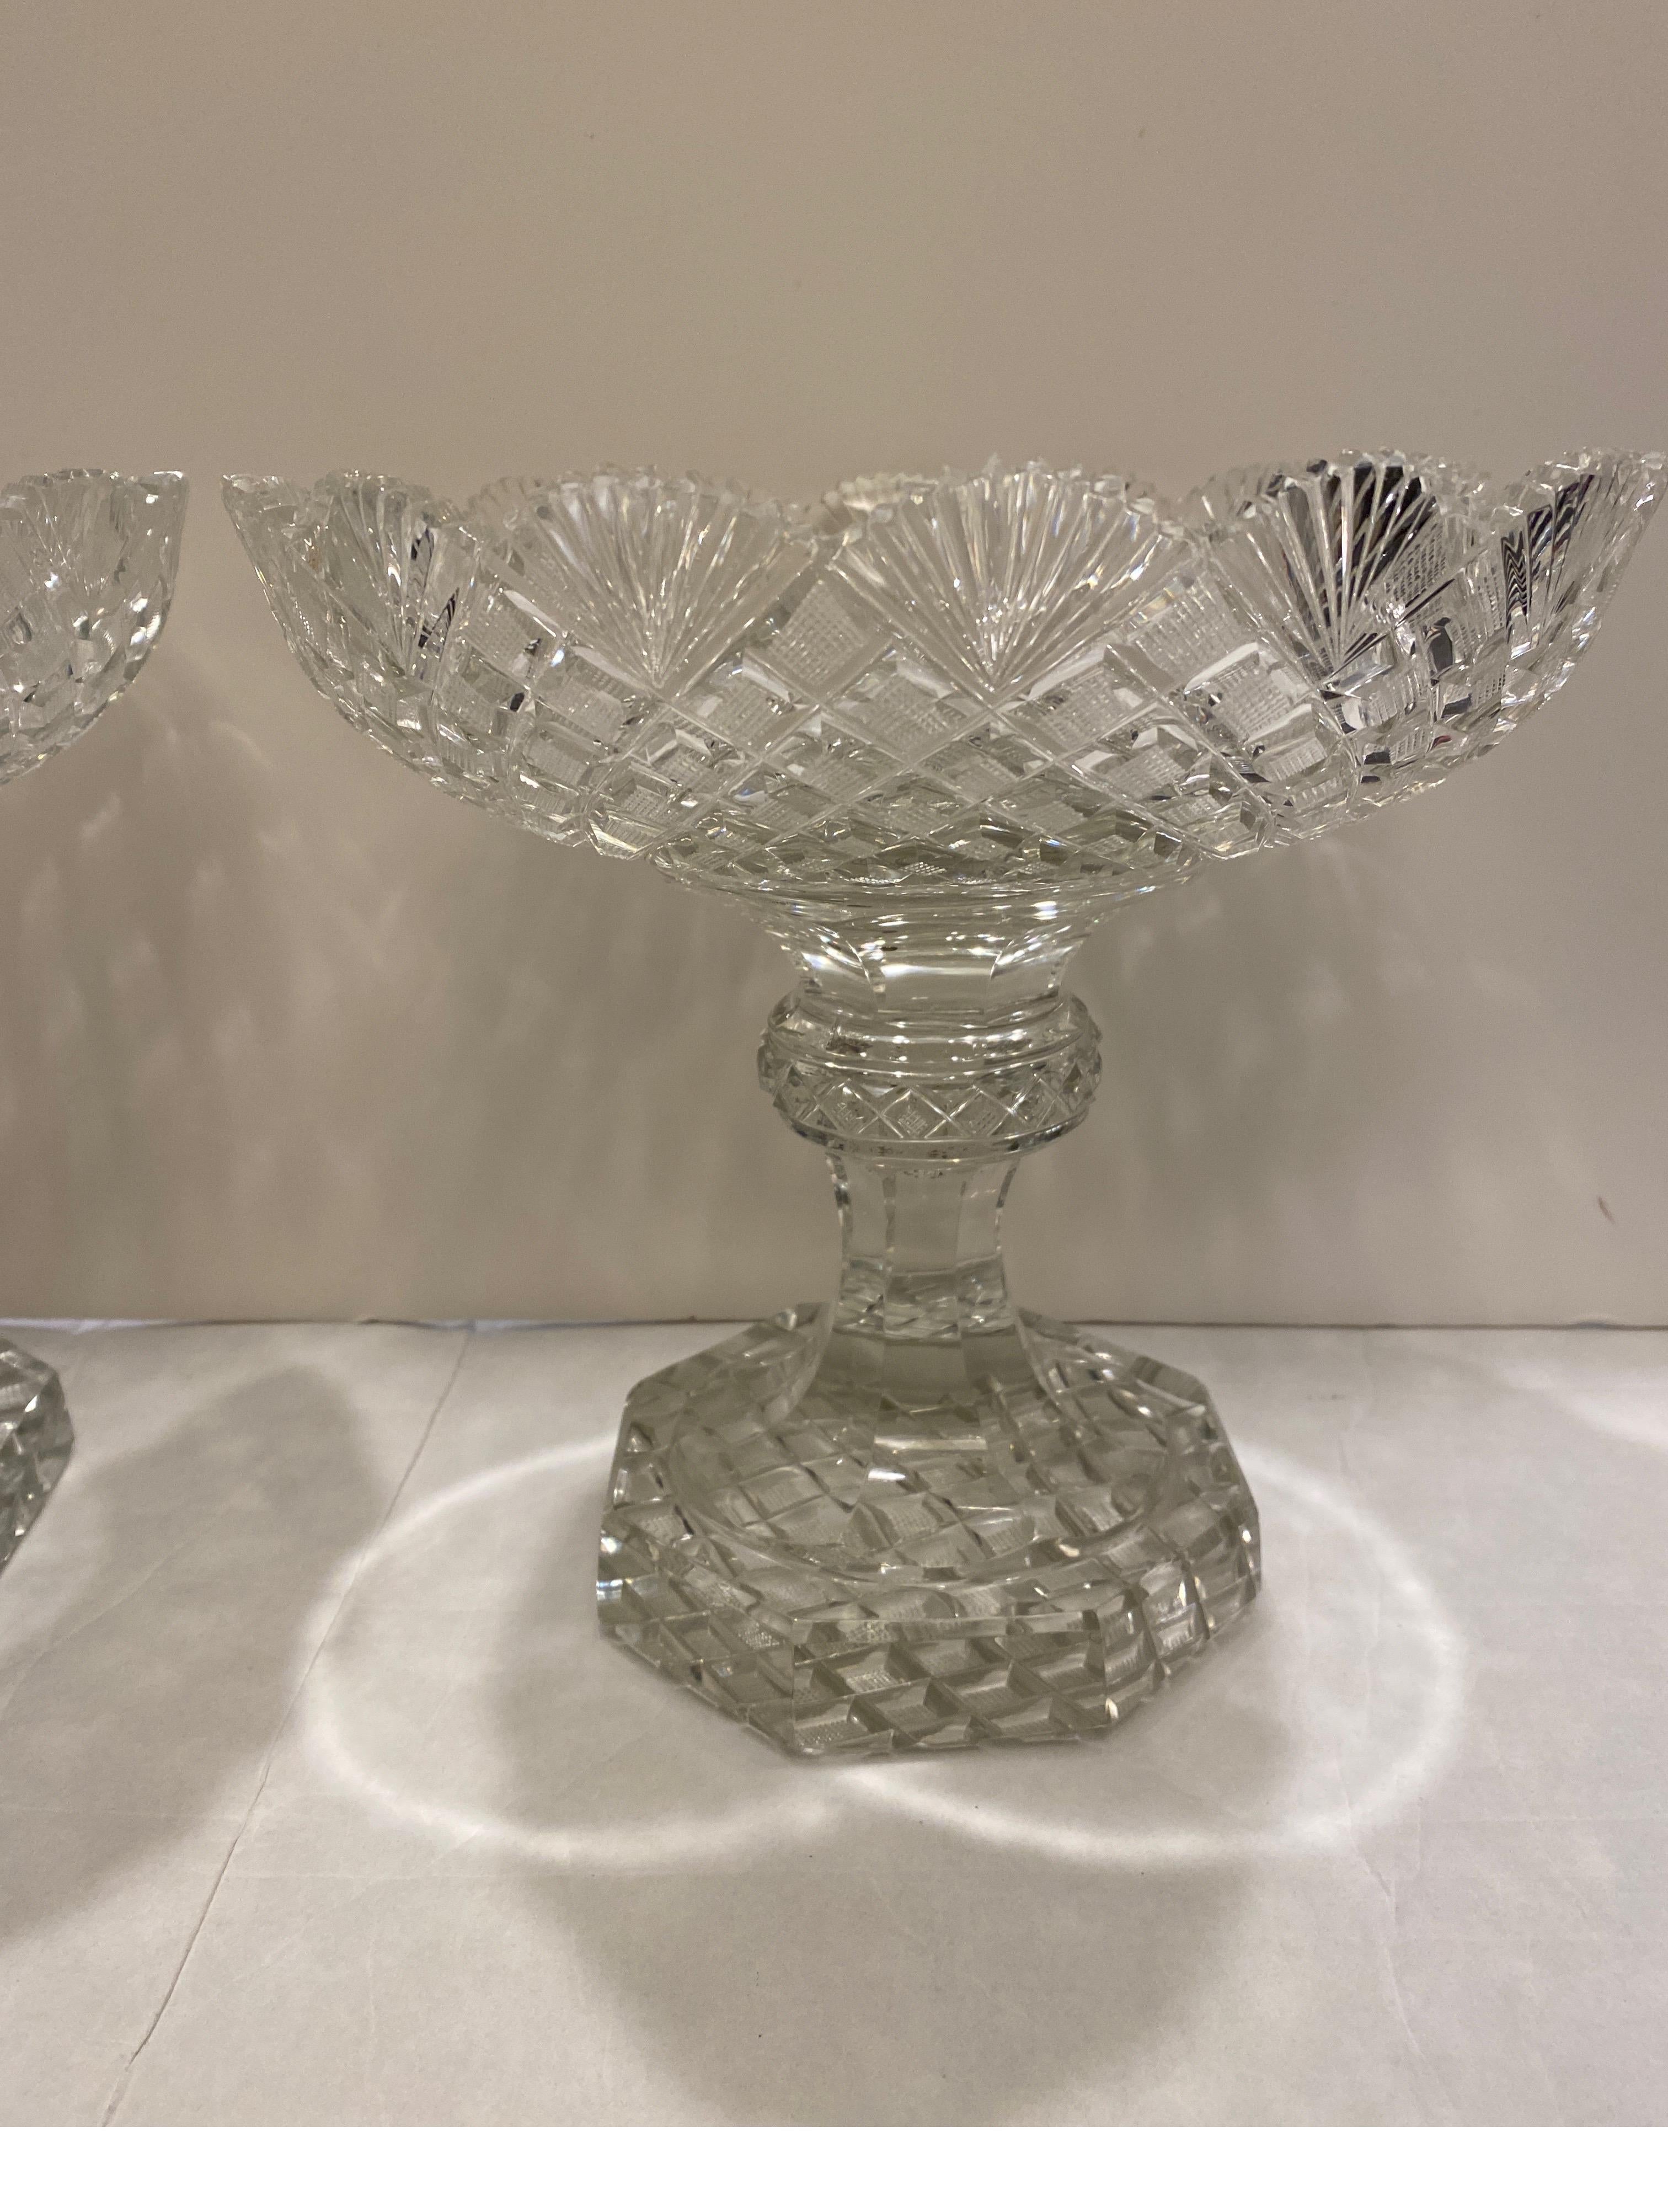 Gran pareja de compoteras georgianas de pedestal de cristal tallado Georgiano en venta